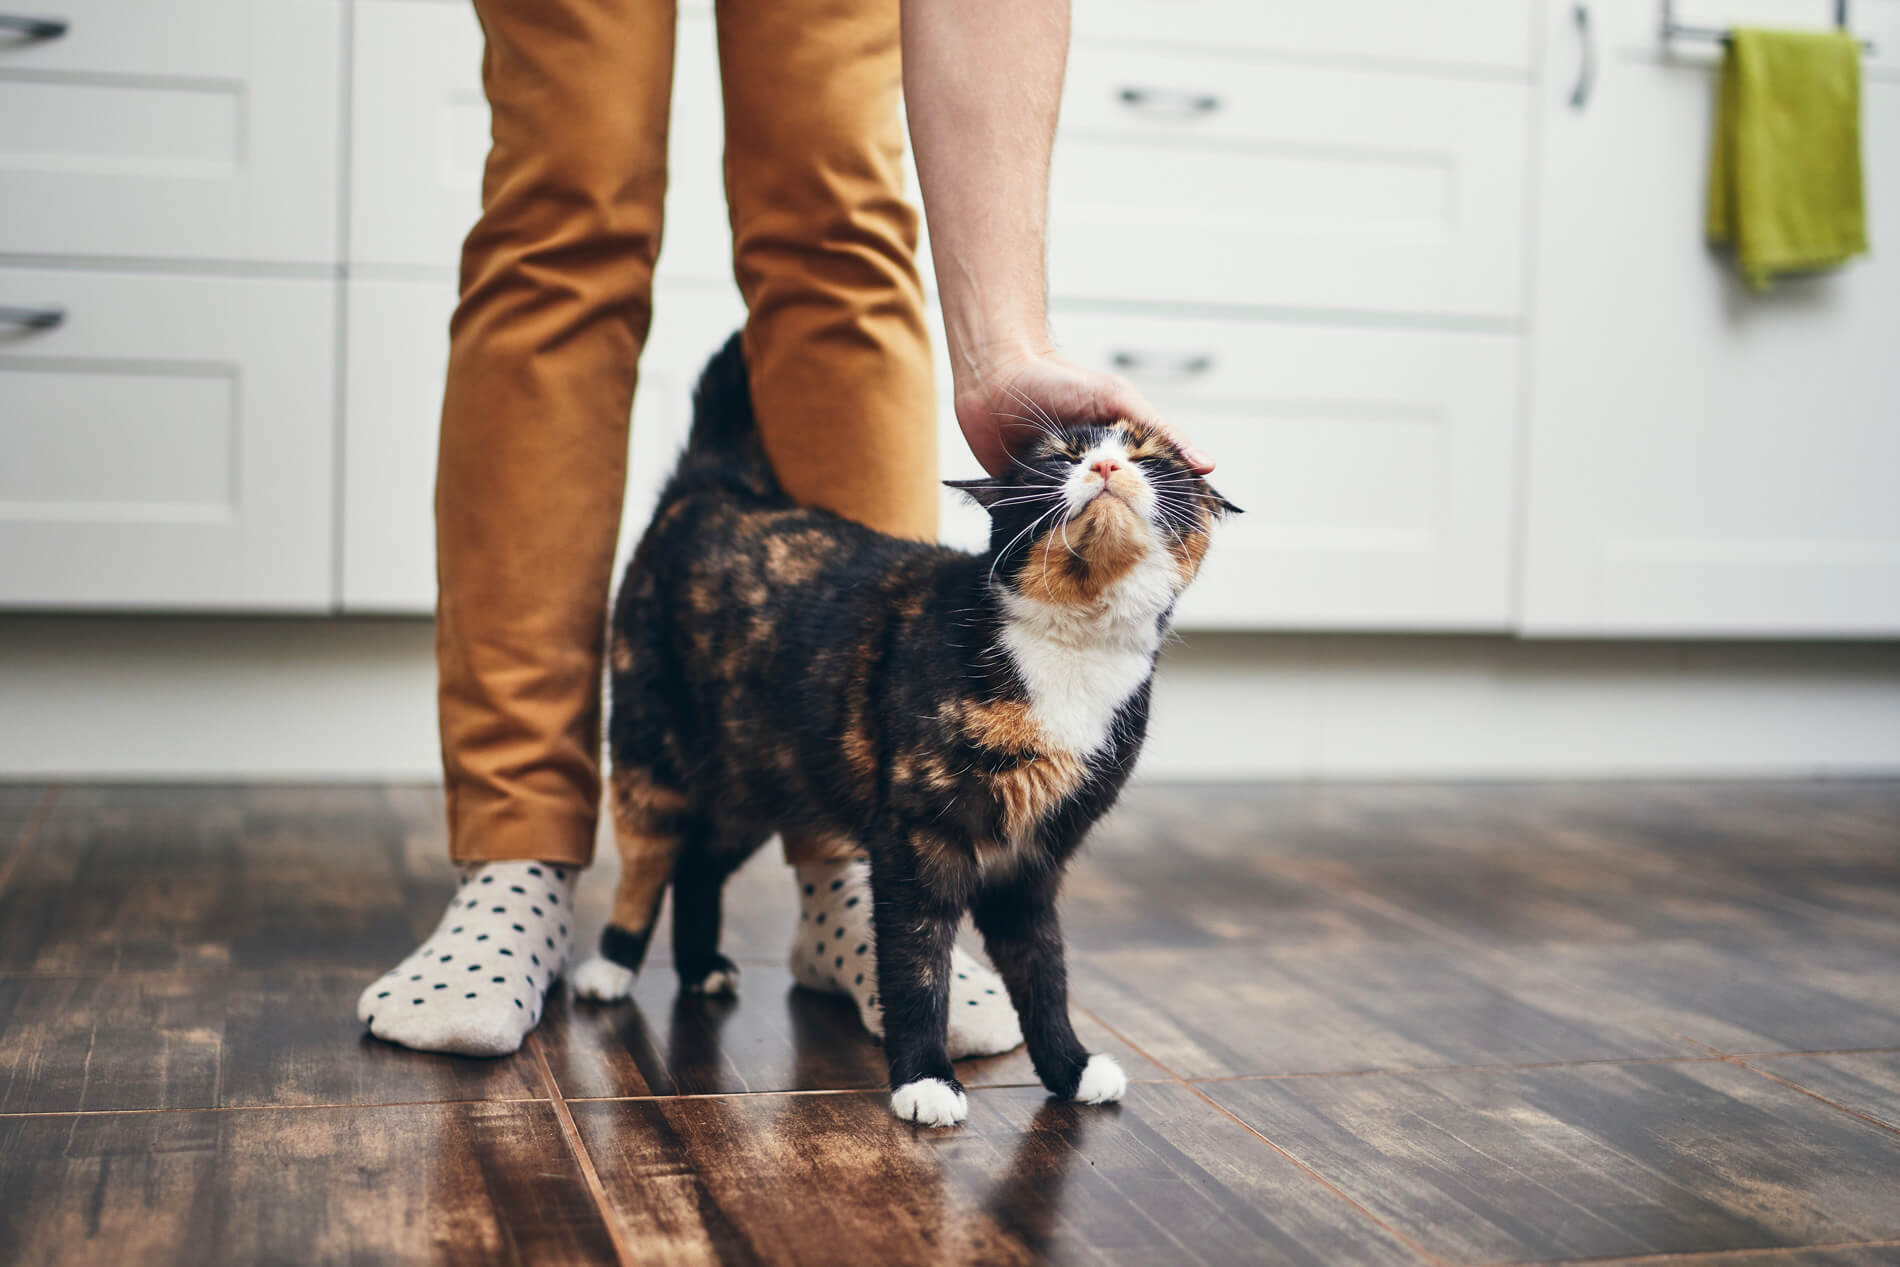 Cat walking between person's legs